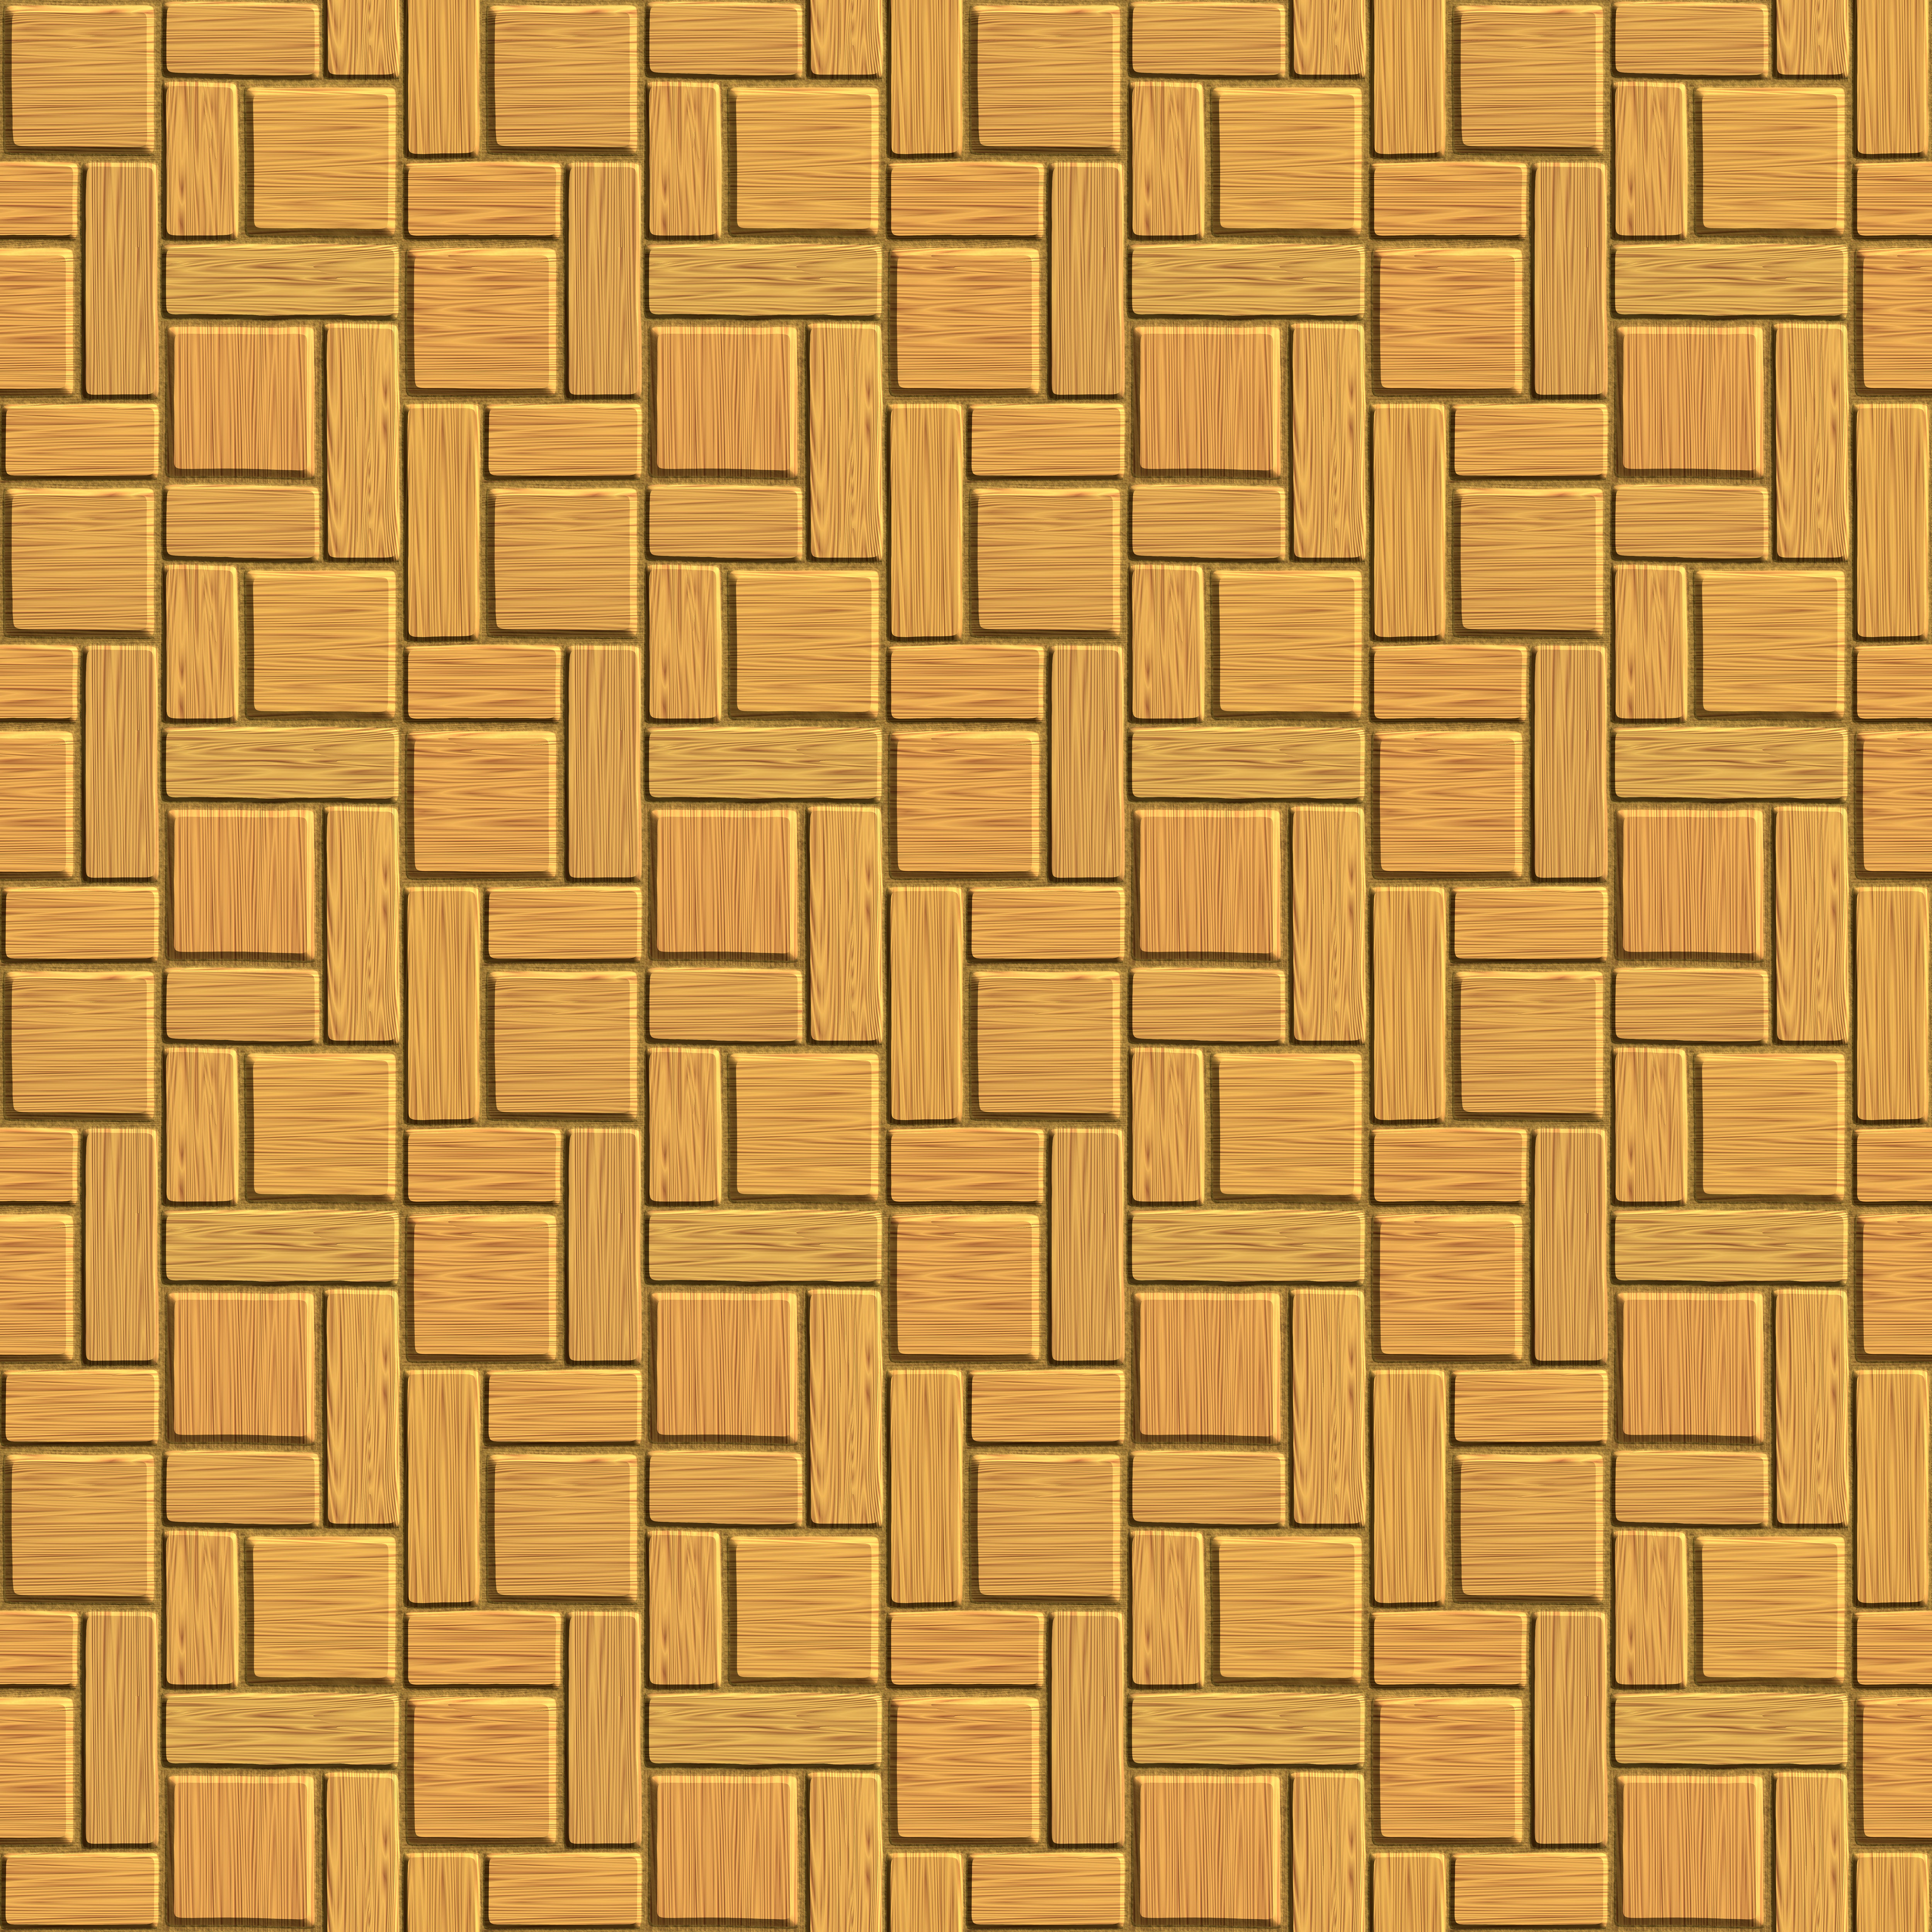 patterned wooden floor tiles background image